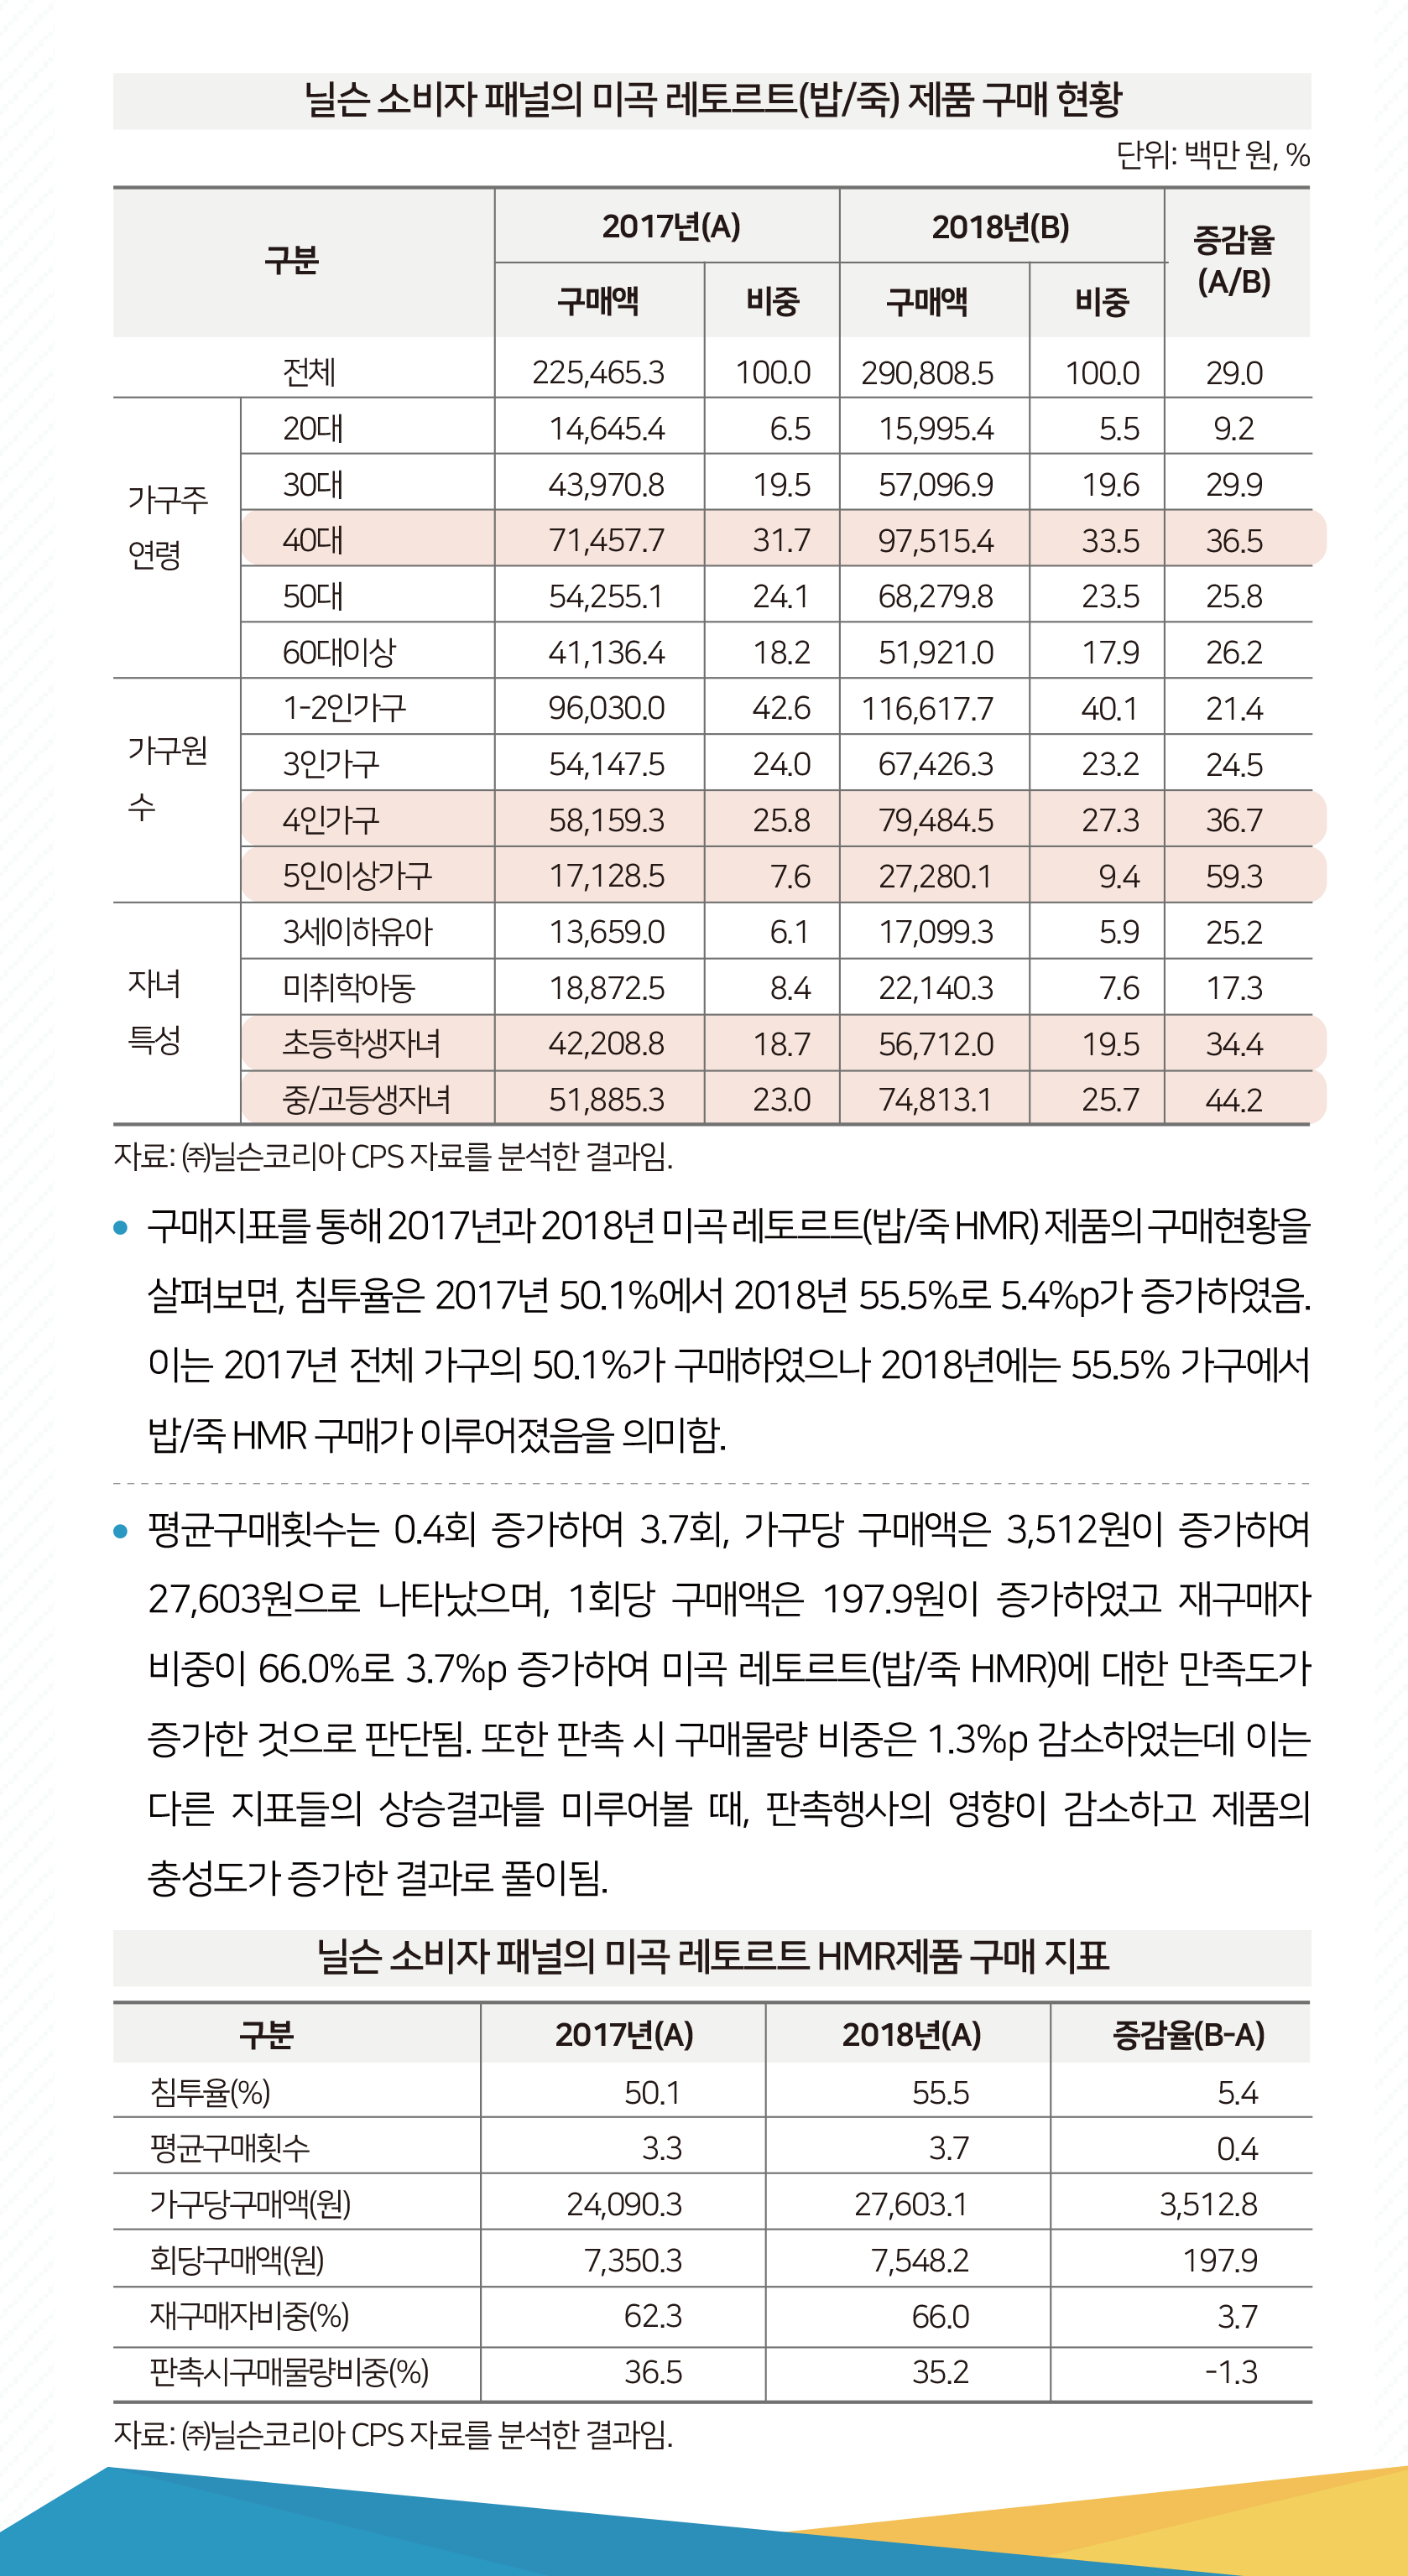 닐슨 소비자 패널의 미곡 레트로트 제품 구매현황